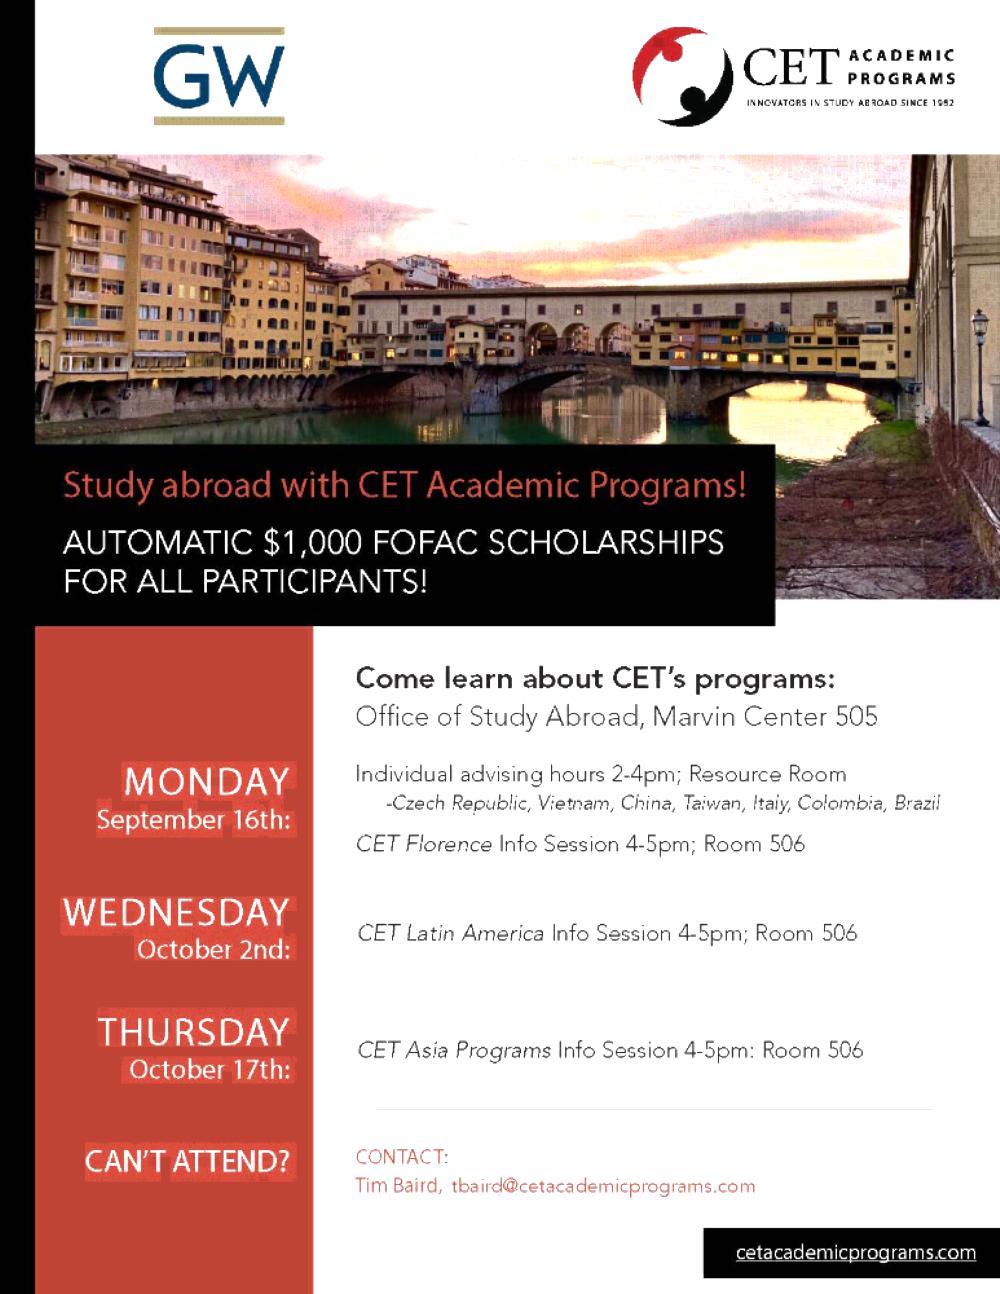 CET Asia Programs Ino Session